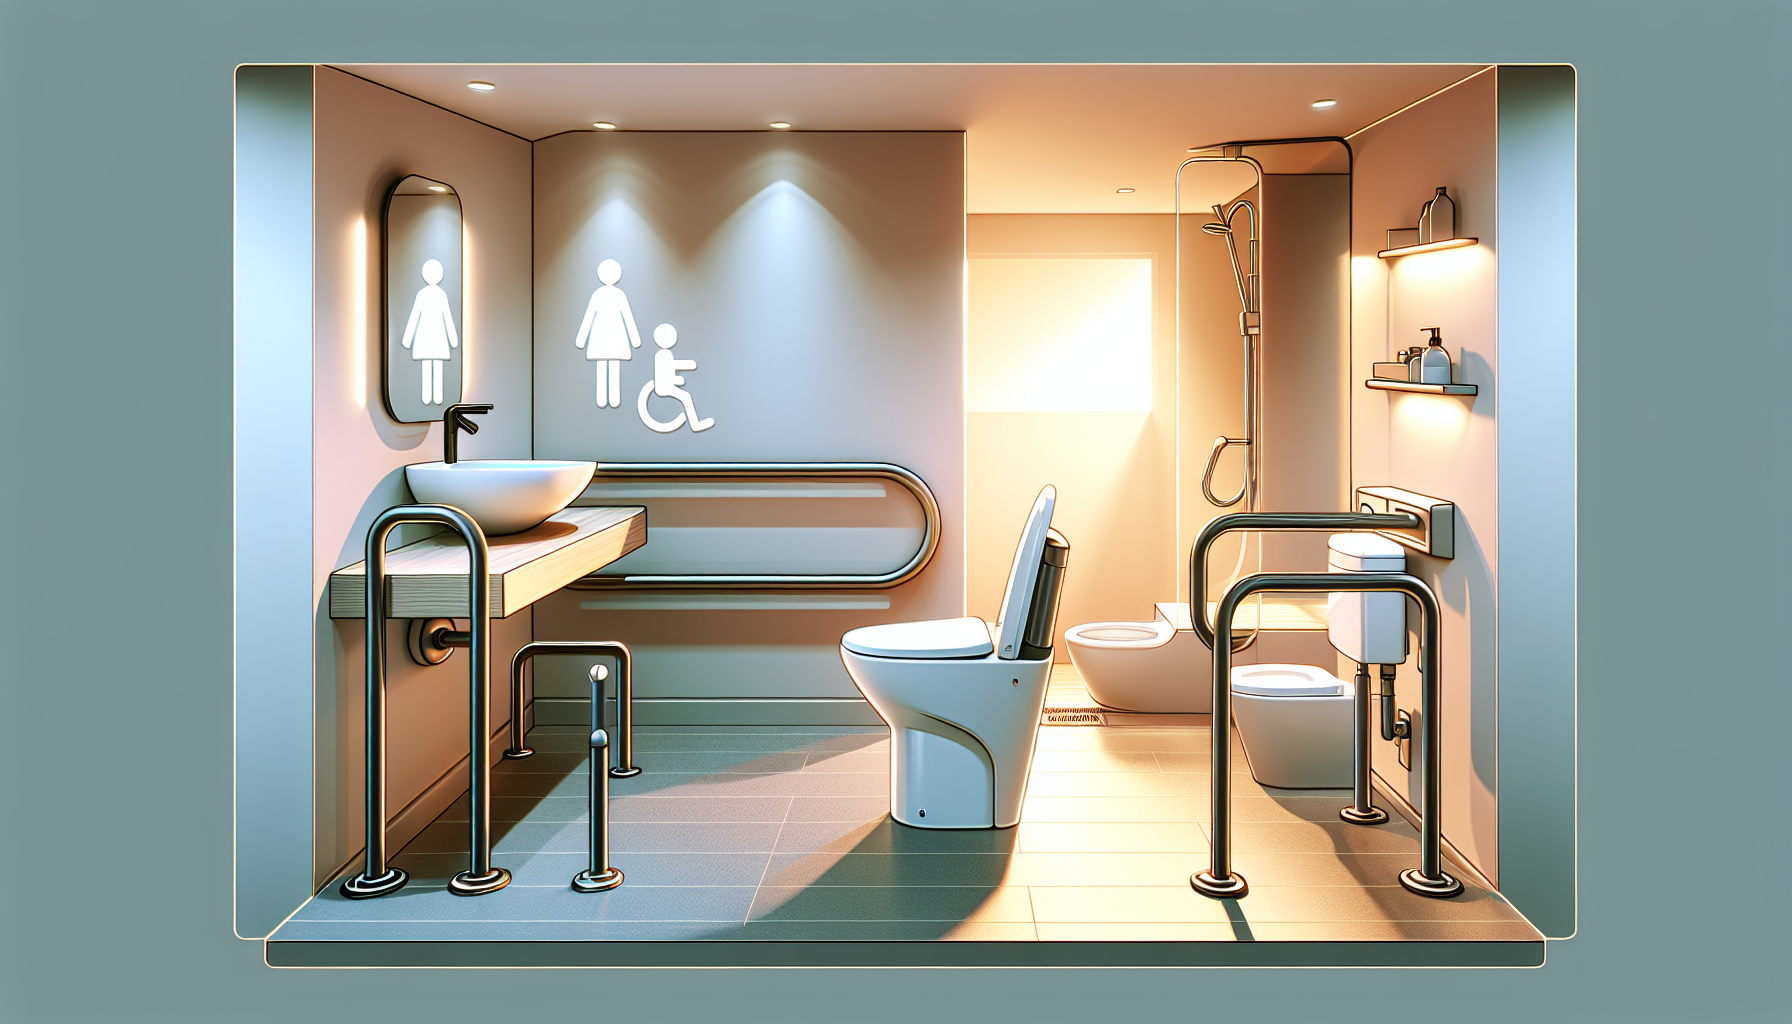 Barrierefreiheit und Komfort im modernisierten WC mit Anpassungen für verschiedene Altersgruppen und ergonomische Designelemente